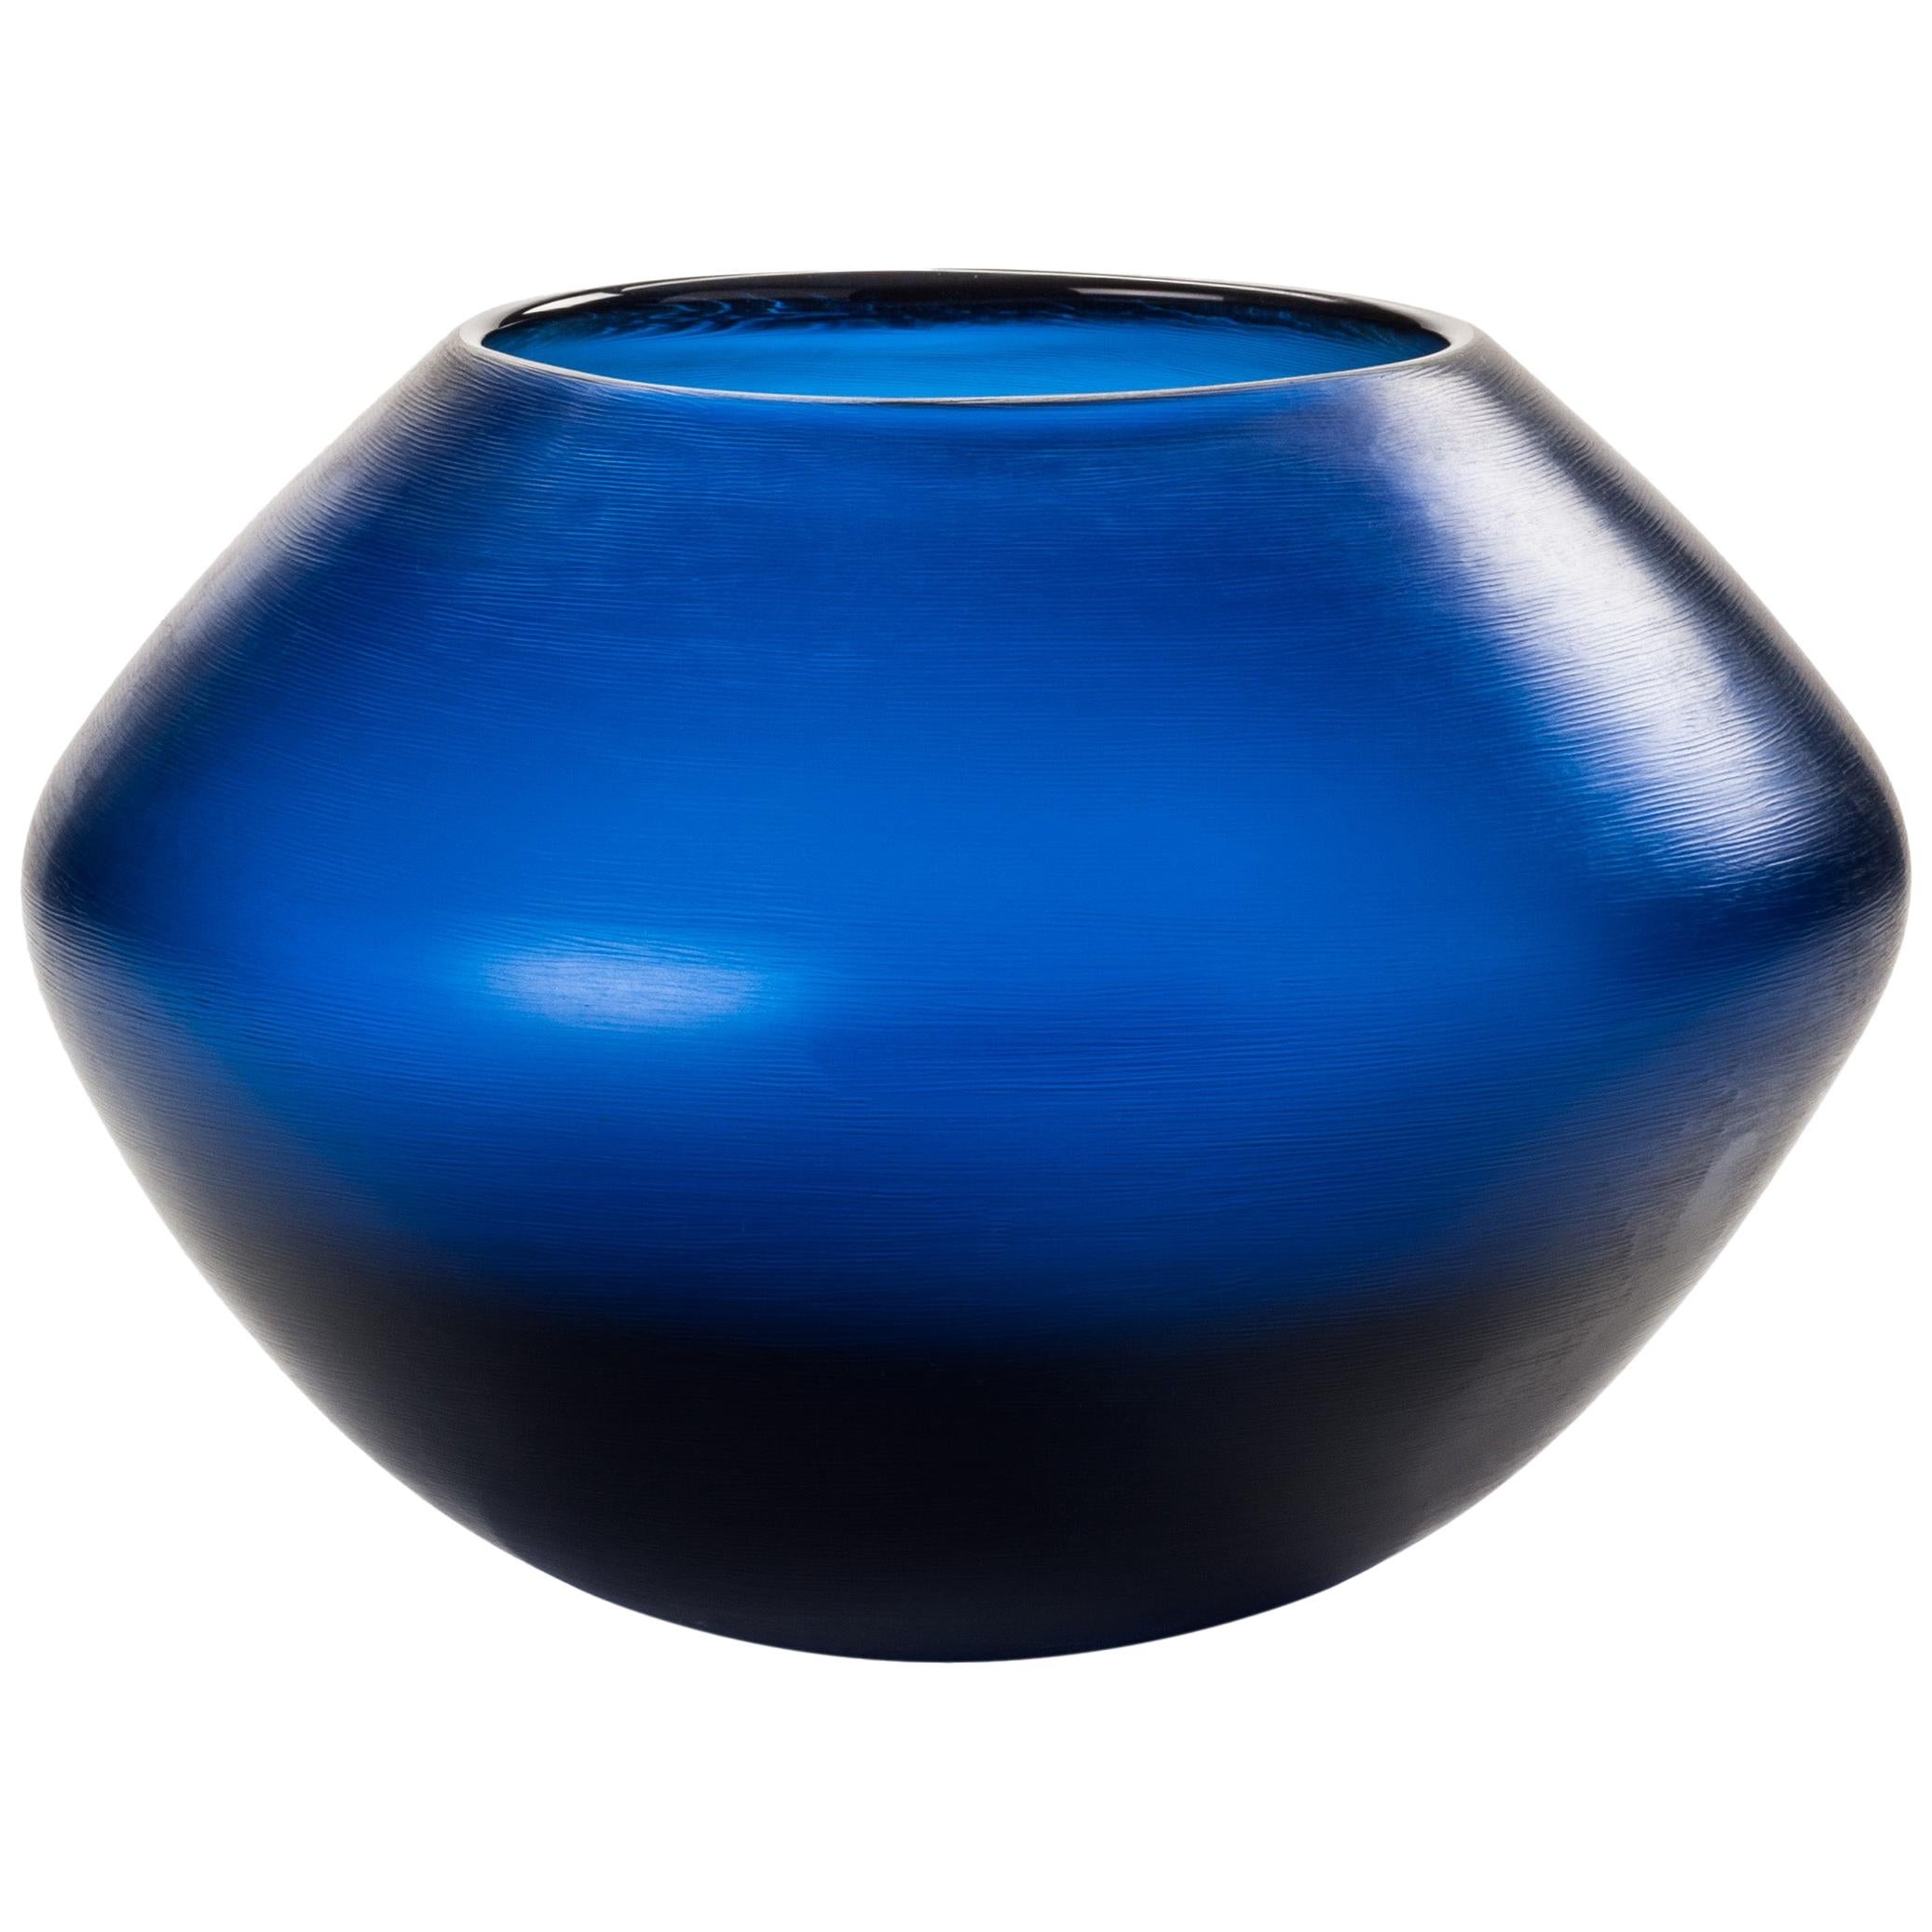 Venini Incisi Short Glass Vase in Marine Blue by Paolo Venini